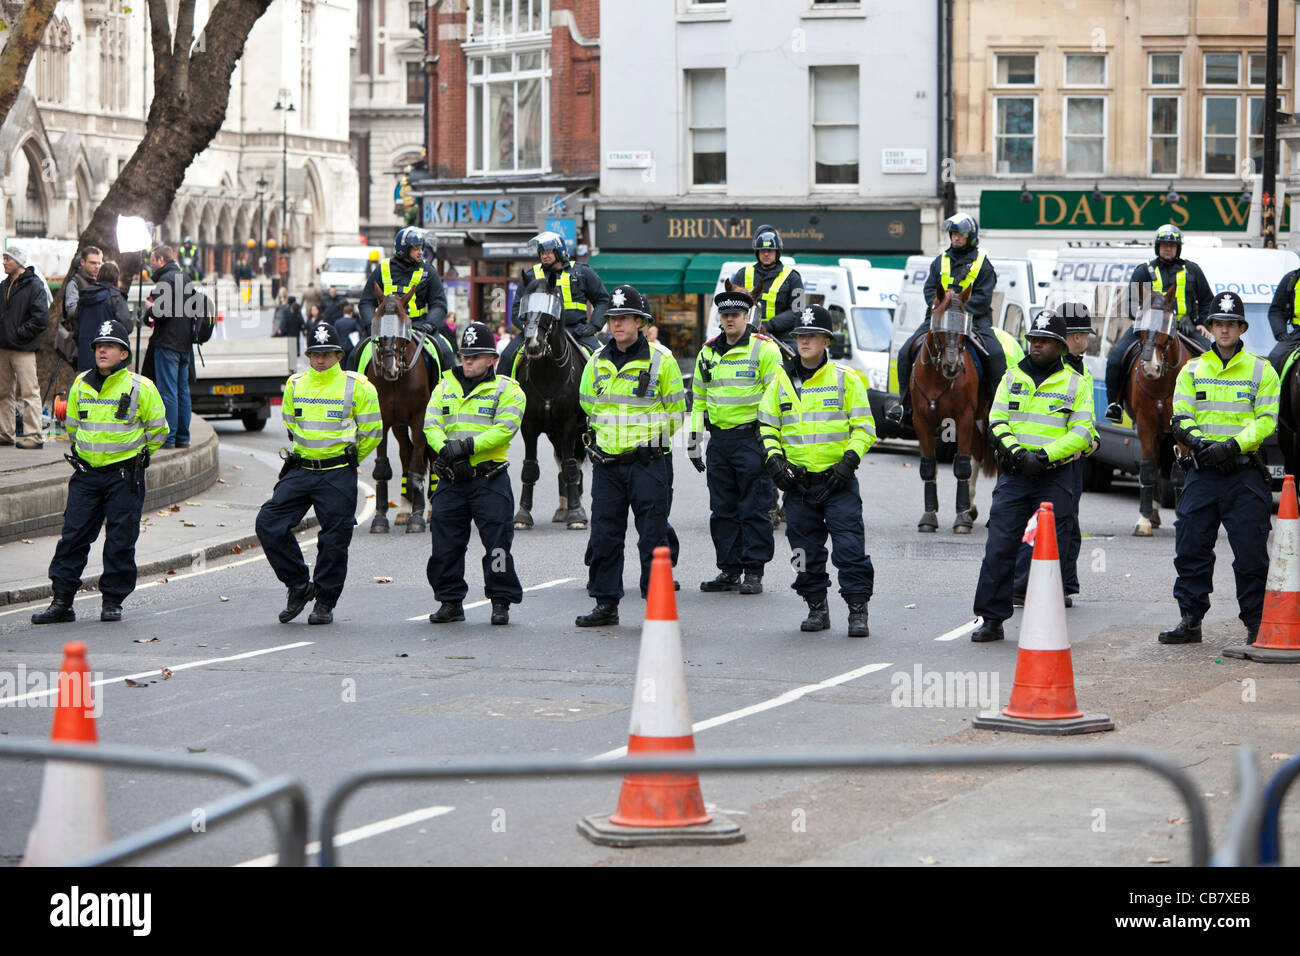 Fuerza de la policía británica en huelga del sector público (los sindicatos), Londres, Inglaterra, Reino Unido. Foto de stock